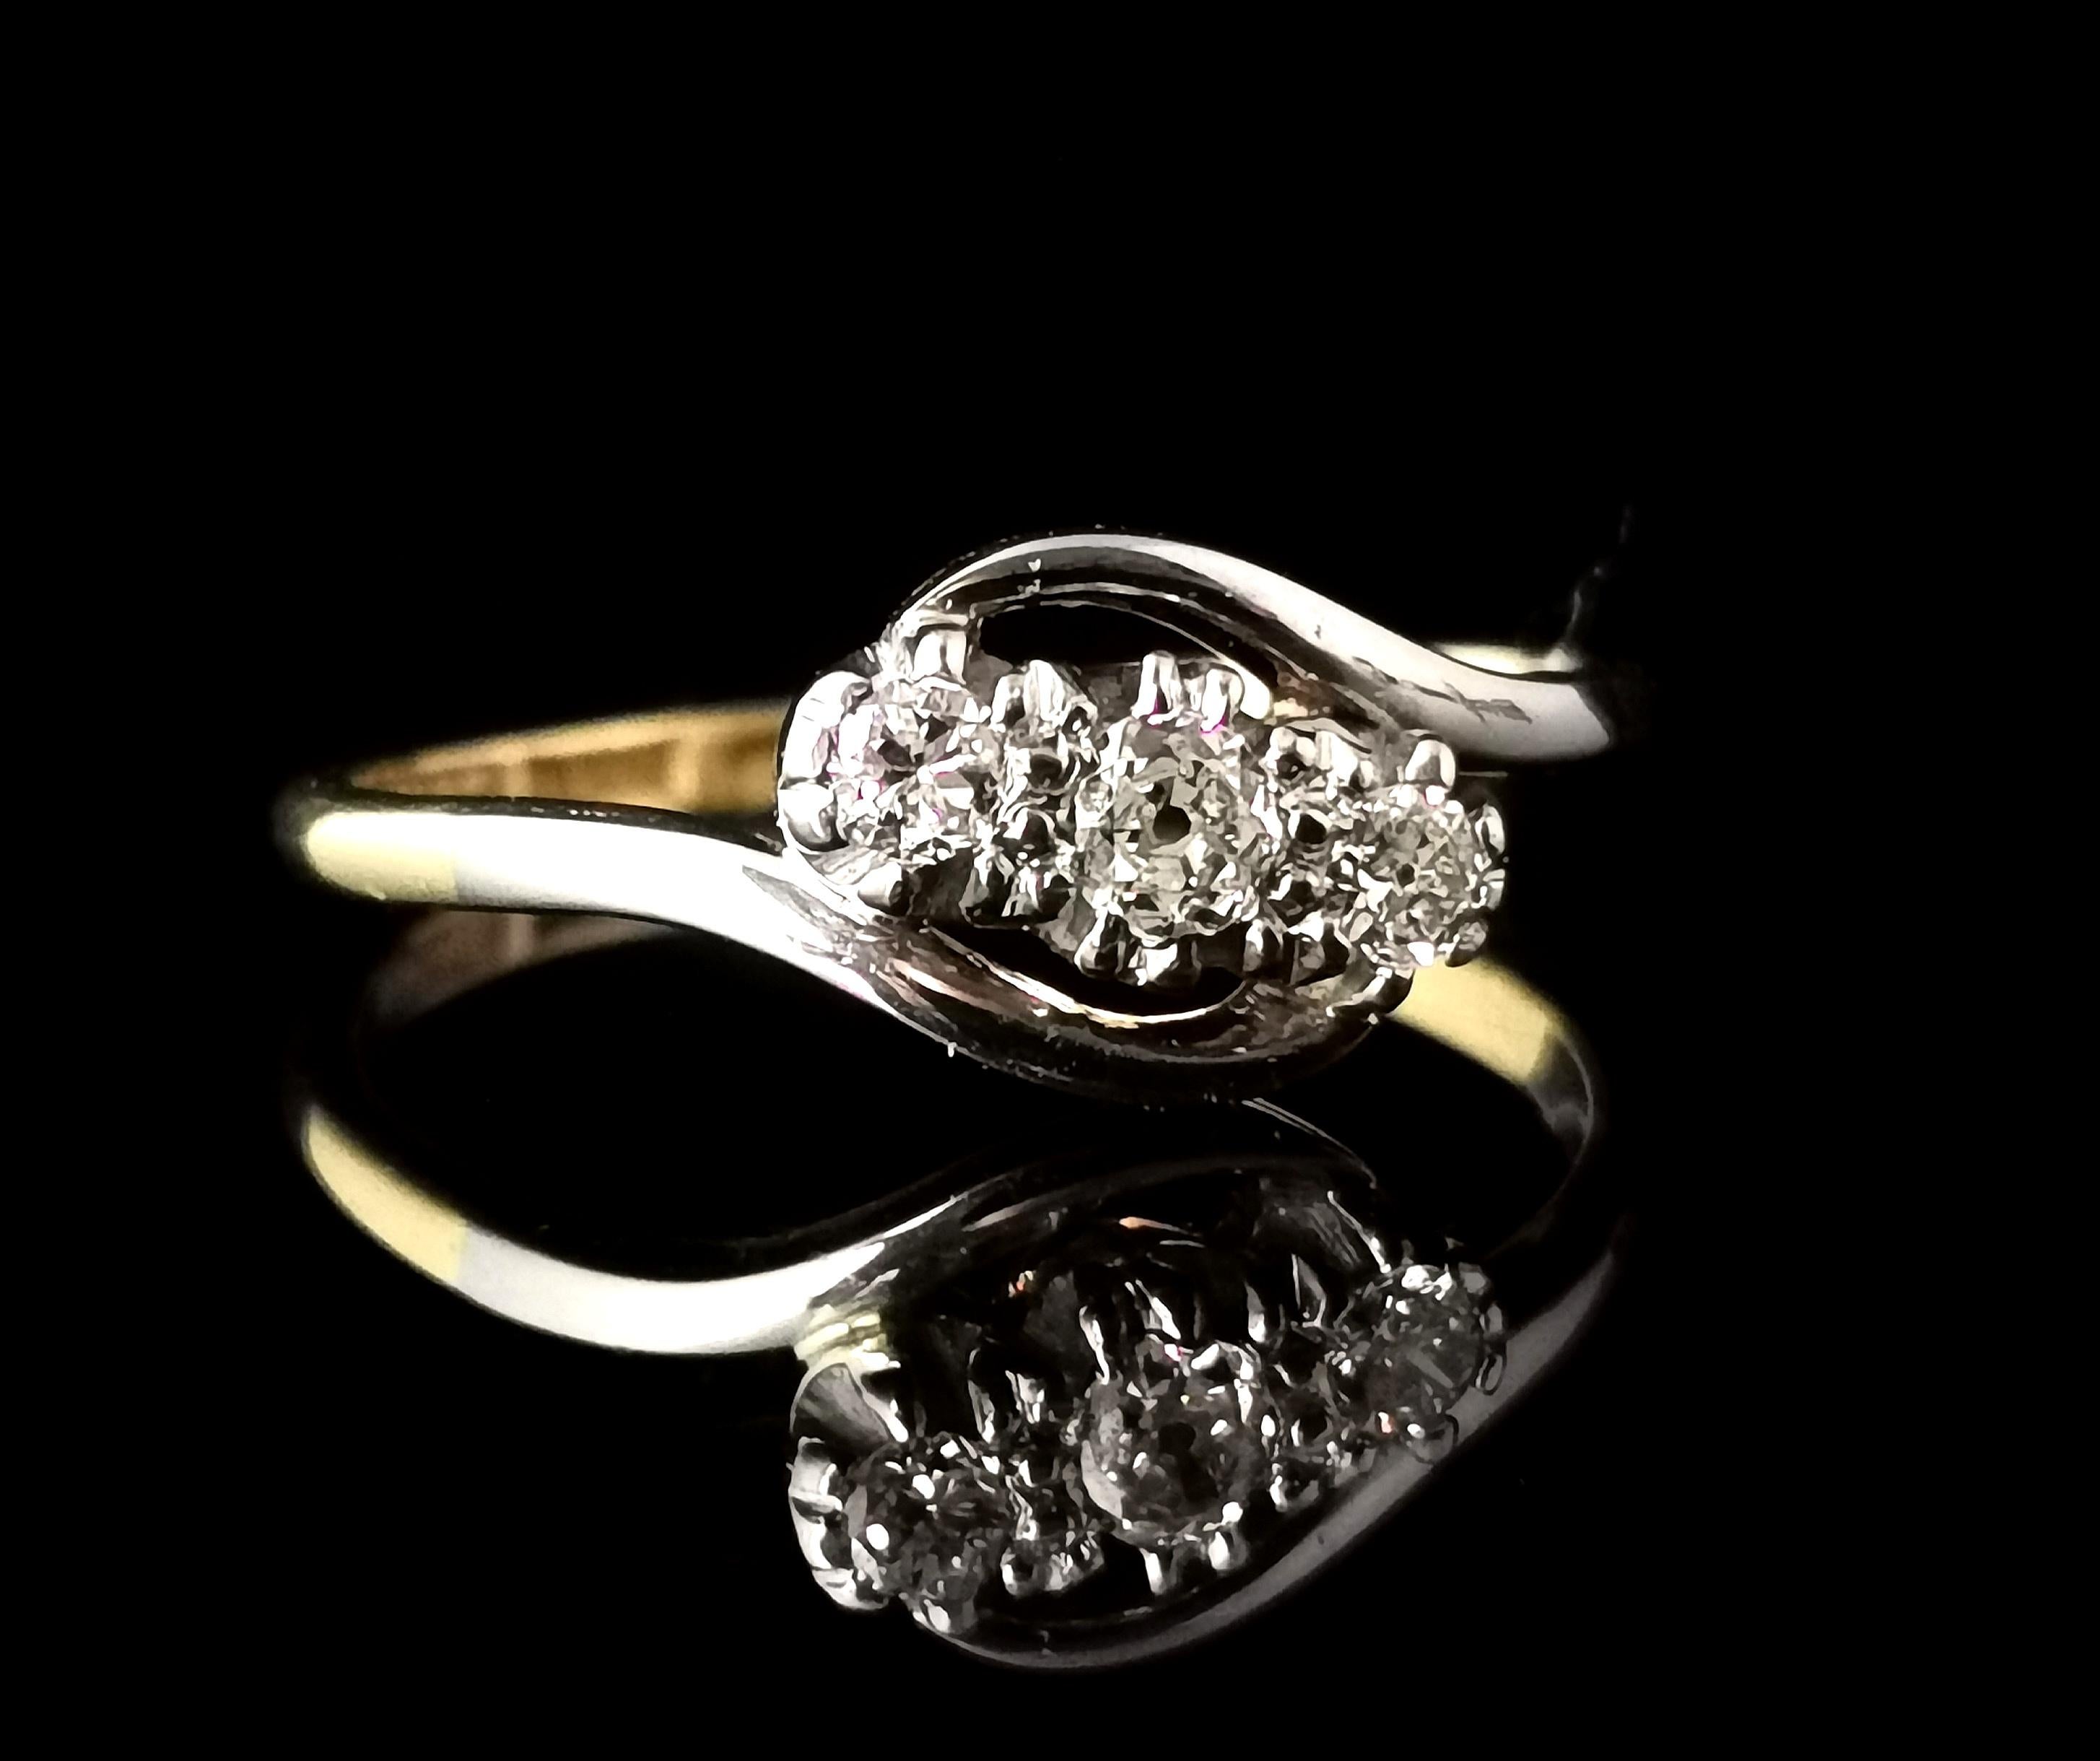 Ein schöner Vintage Art Deco Diamant, Crossover Trilogie Ring.

Eine dekadente Schönheit, die sich als wunderschöner Art-Verlobungsring oder einfach als Geschenk für sich selbst oder einen besonderen Menschen eignet.

Glattes und reichhaltiges Band